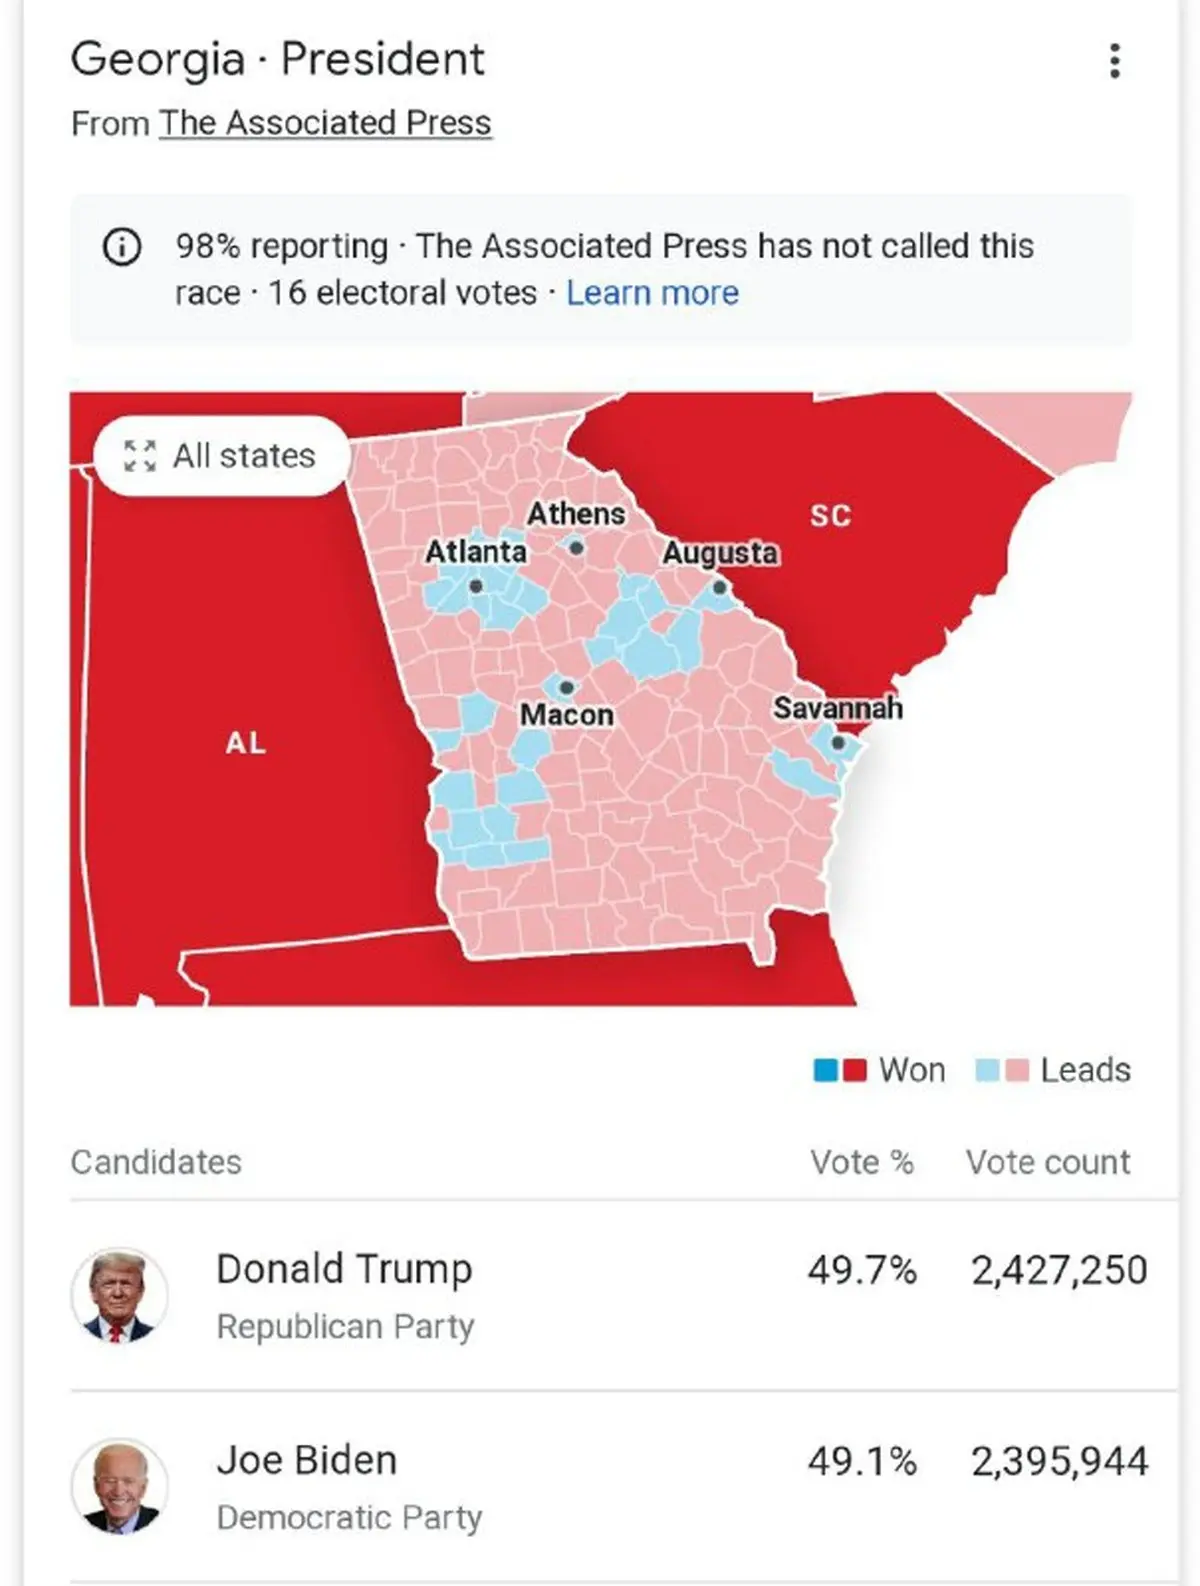 
۹۰ هزار رای دیگر تا پایان شمارش آرای جورجیا 